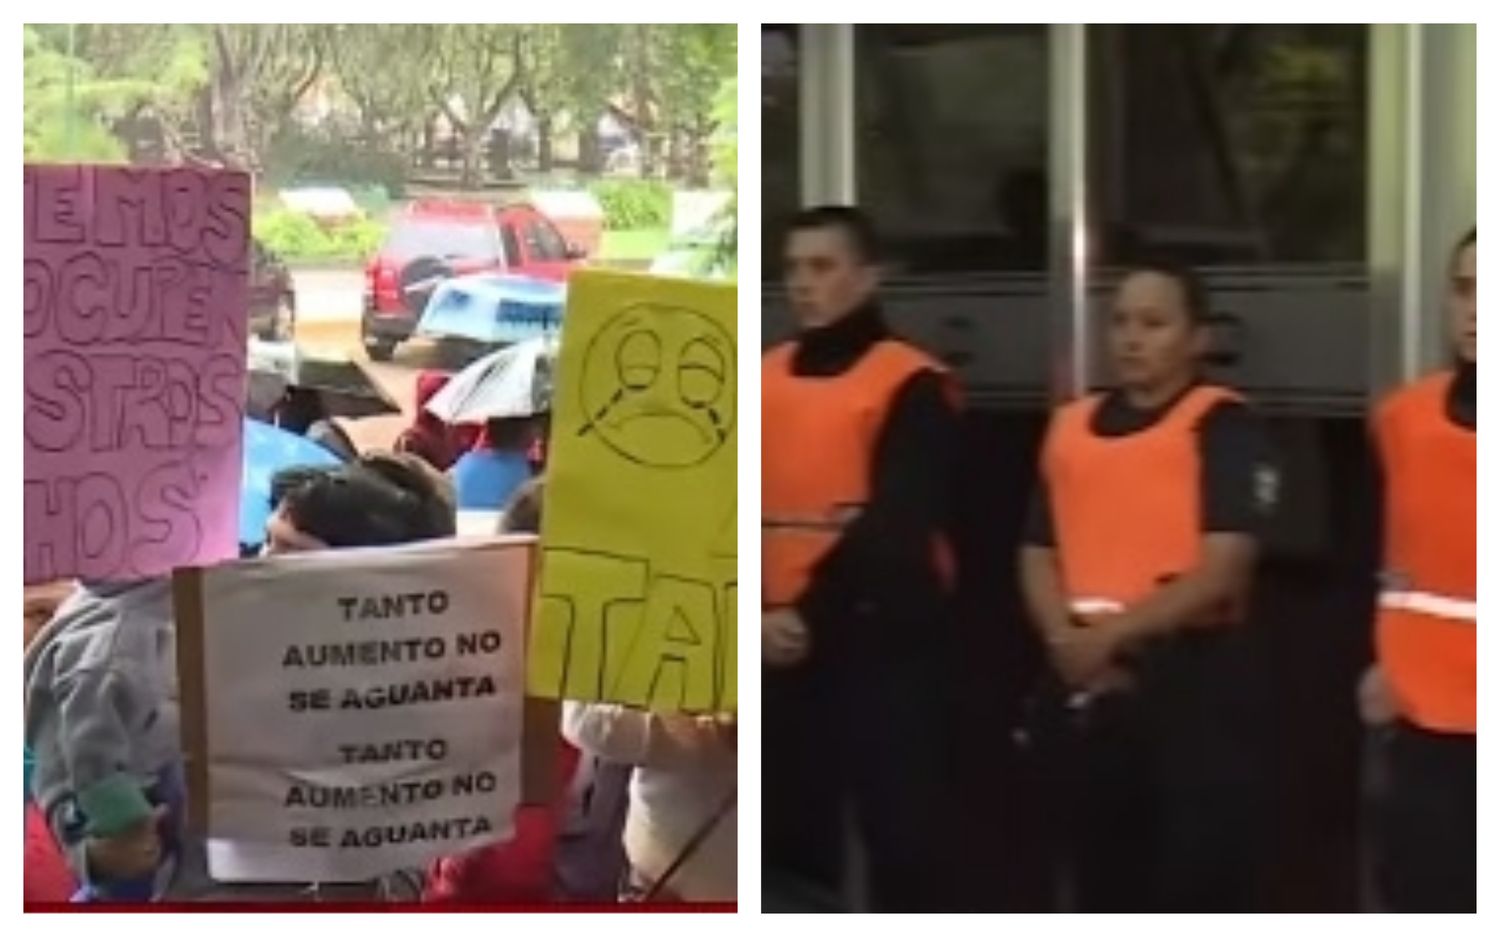 Ruidazo contra el tarifazo frente a la municipalidad de Esteban Echeverría: "No se puede vivir así" 